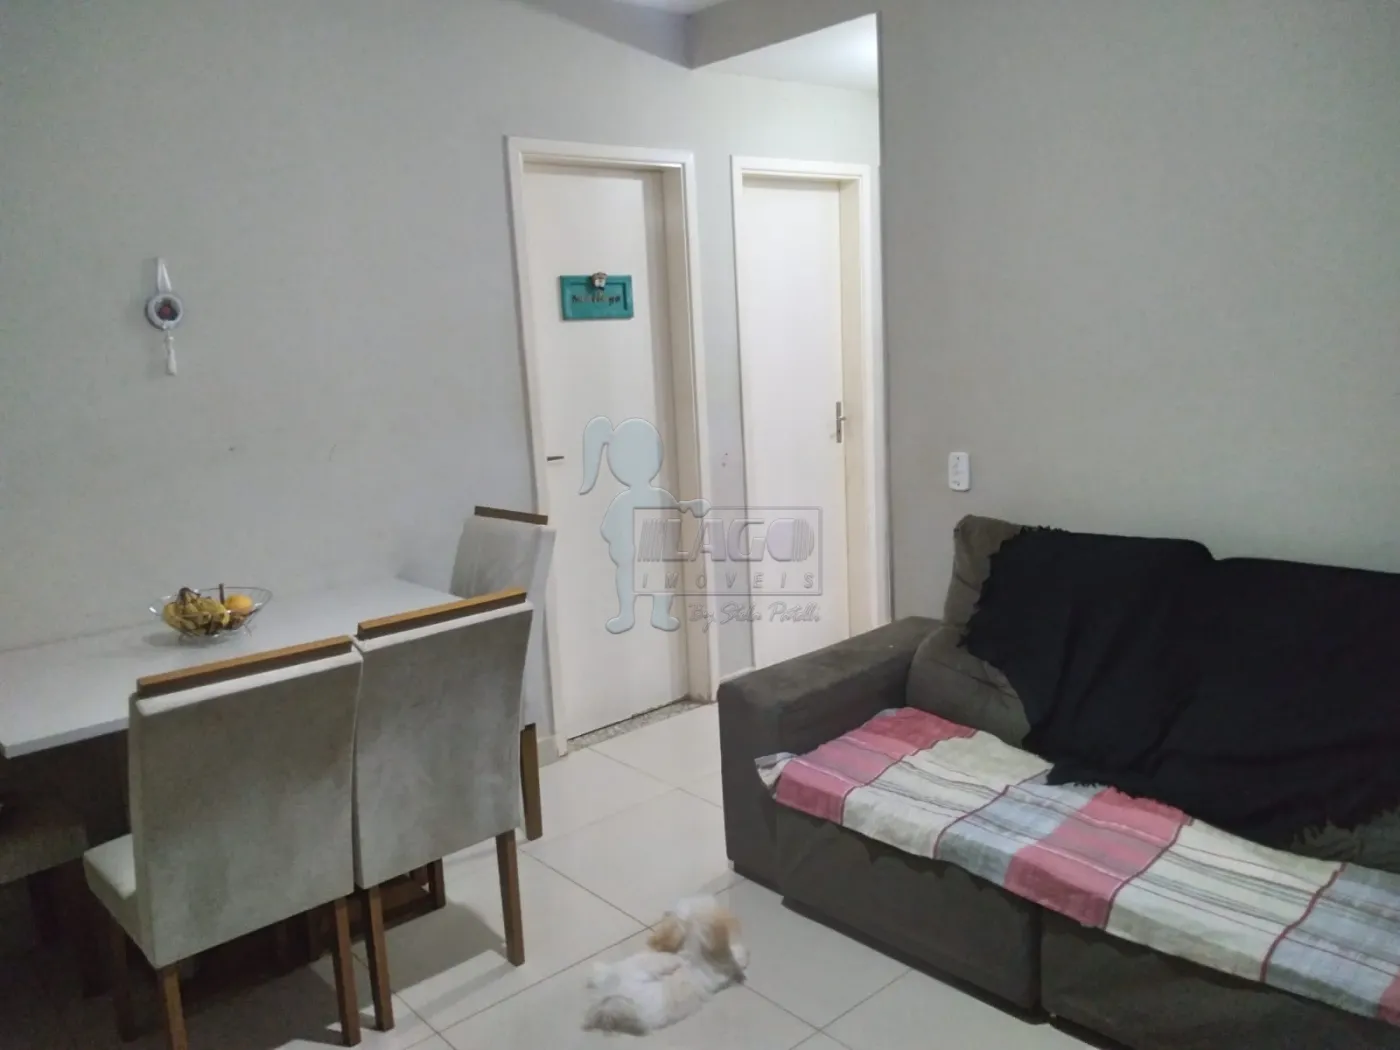 Comprar Apartamentos / Padrão em Ribeirão Preto R$ 212.000,00 - Foto 1